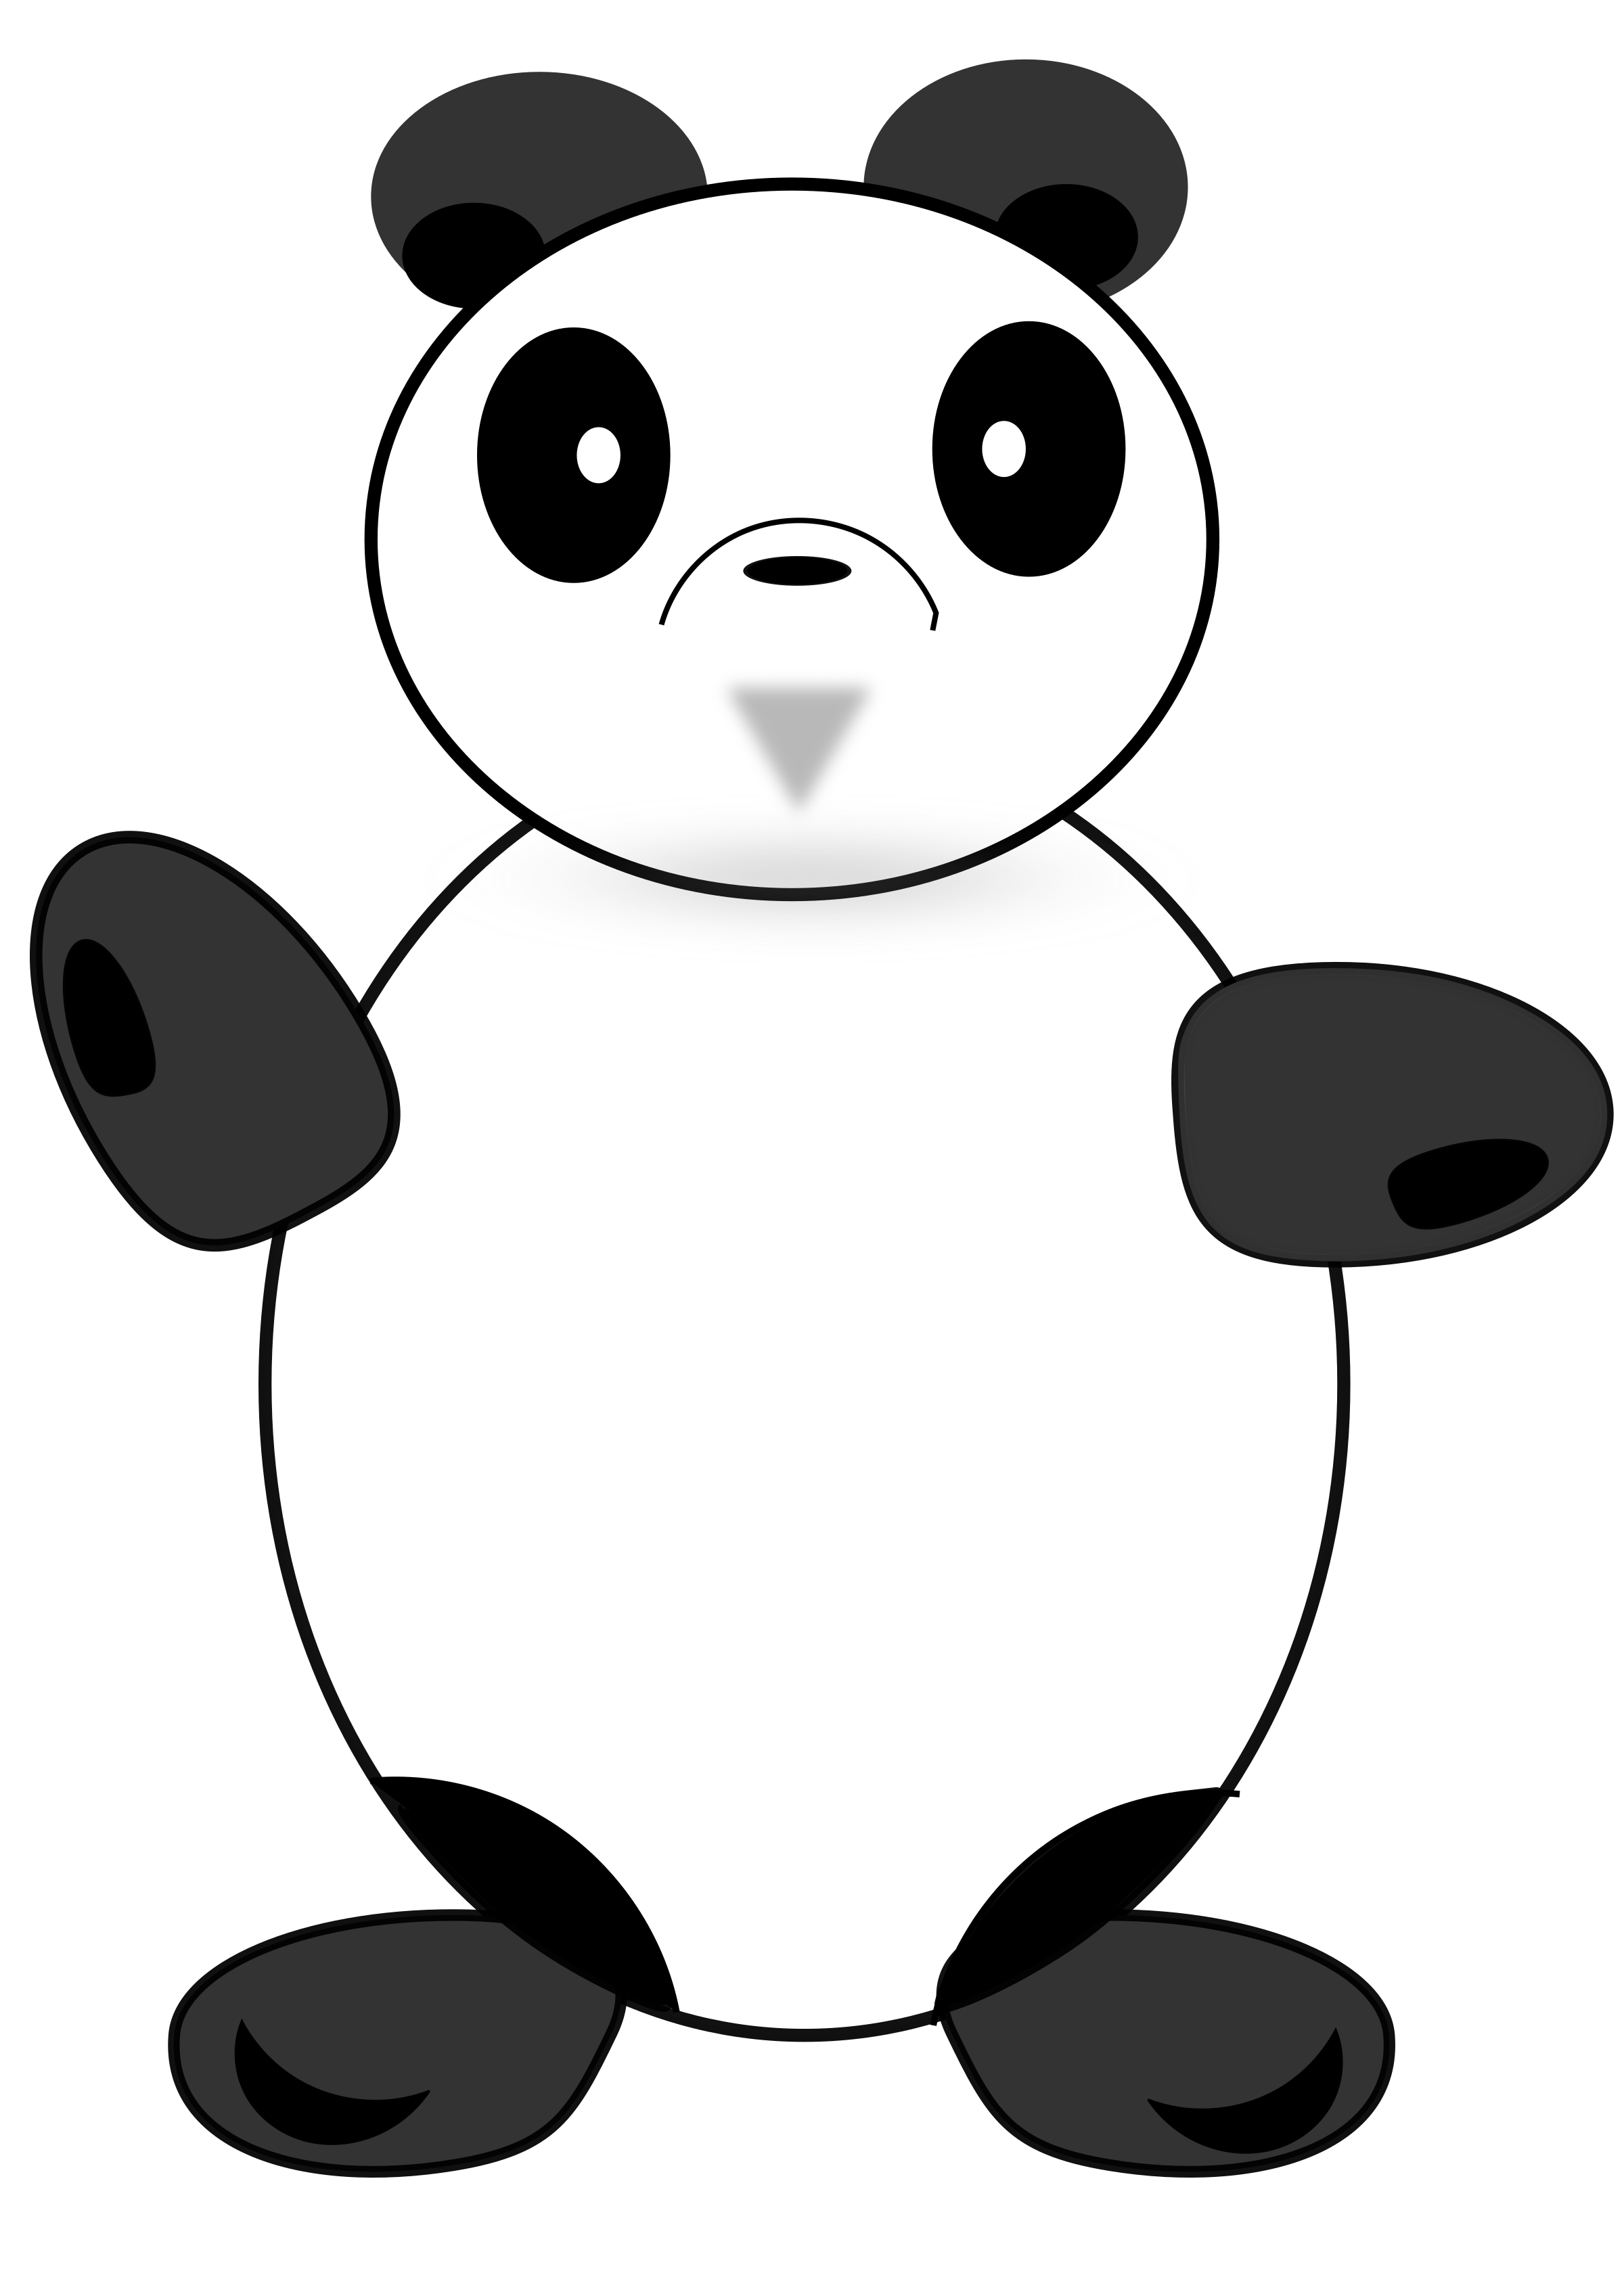 The Circle Panda PNG icon